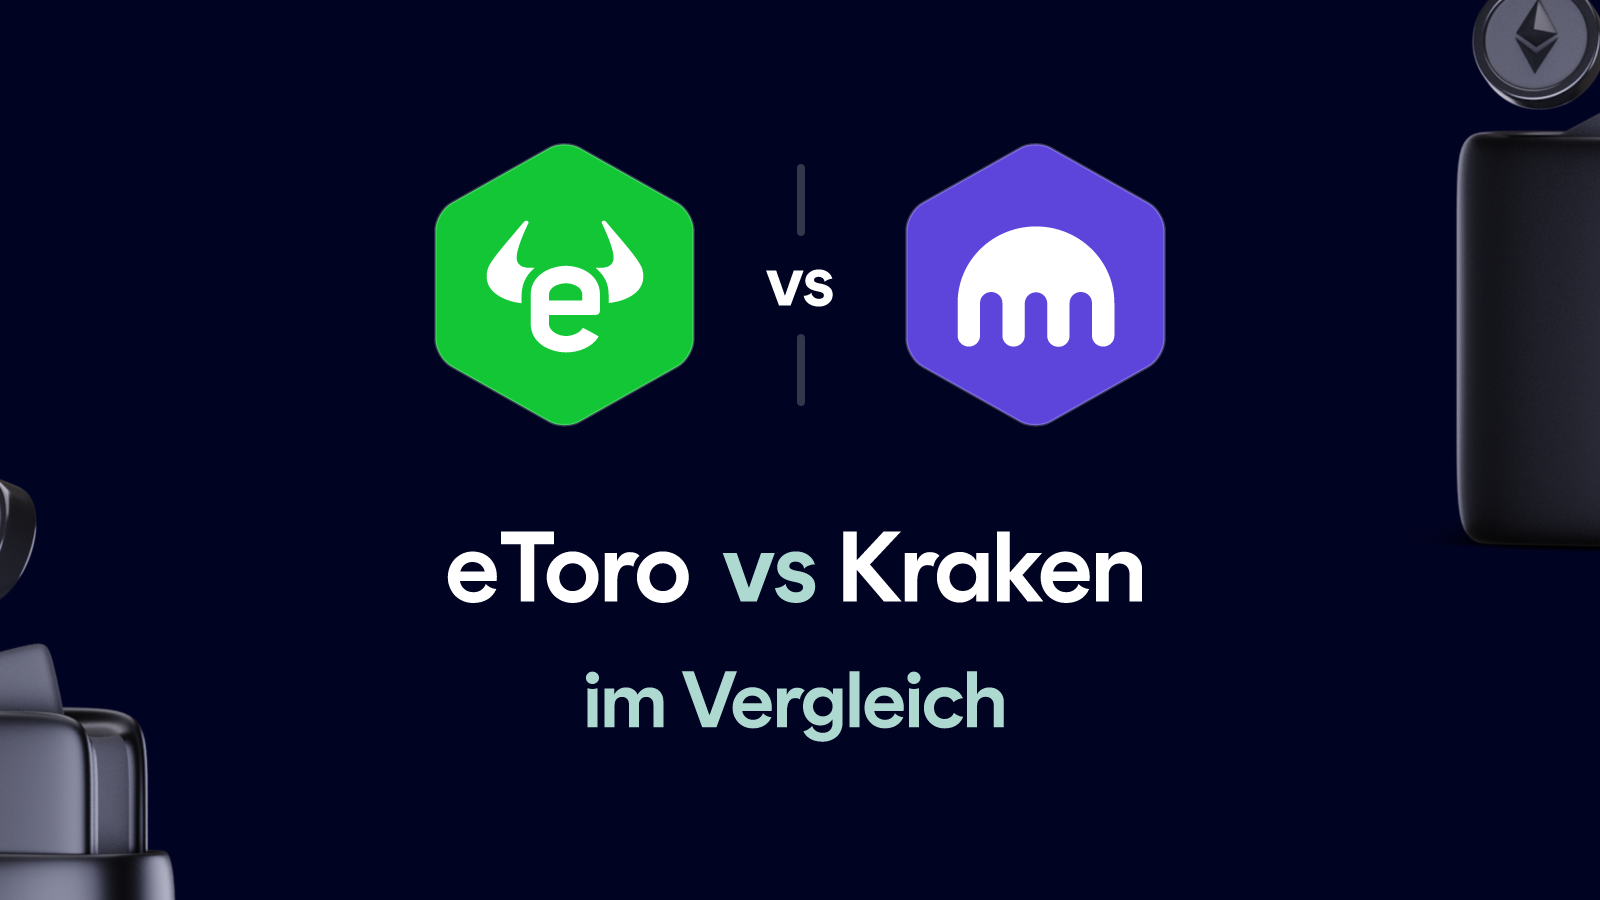 Etoro vs Kraken